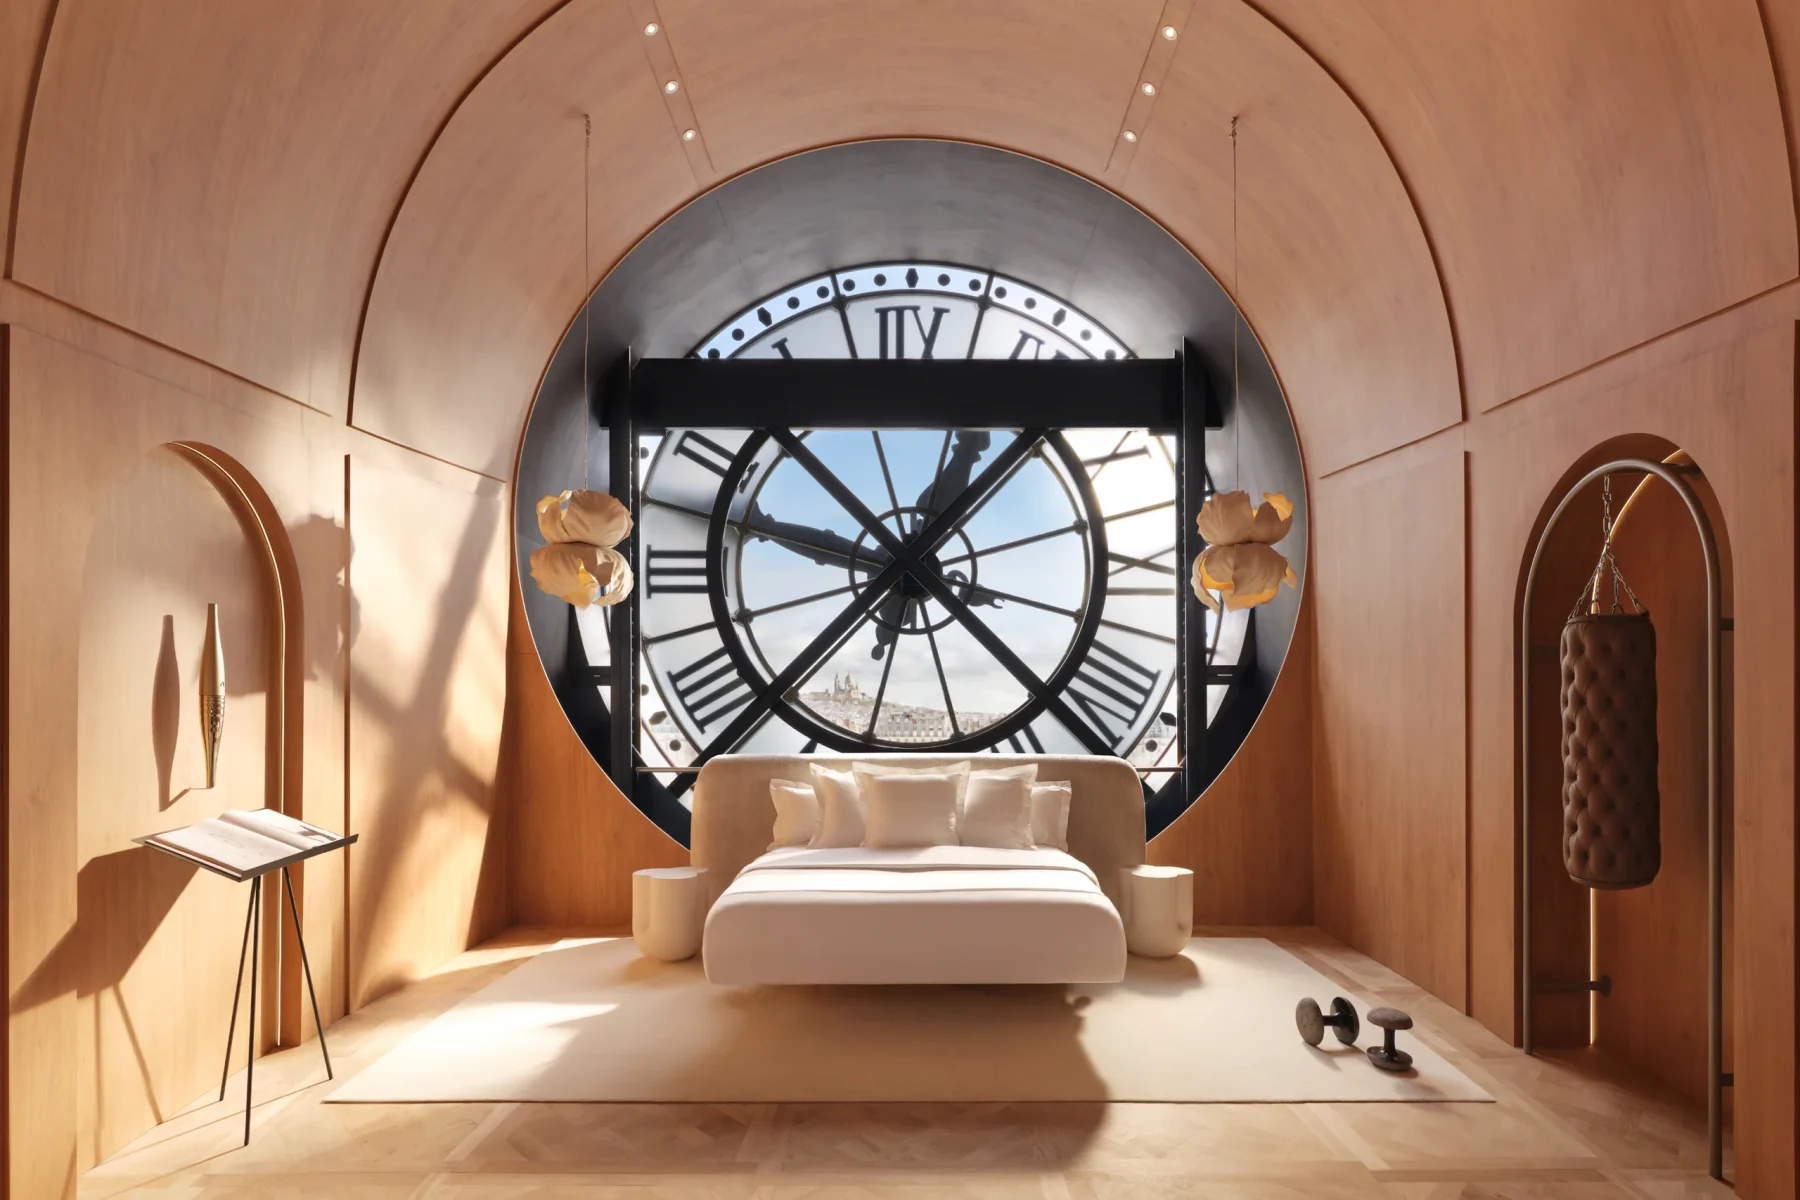 Musée d'Orsay klokkenkamer